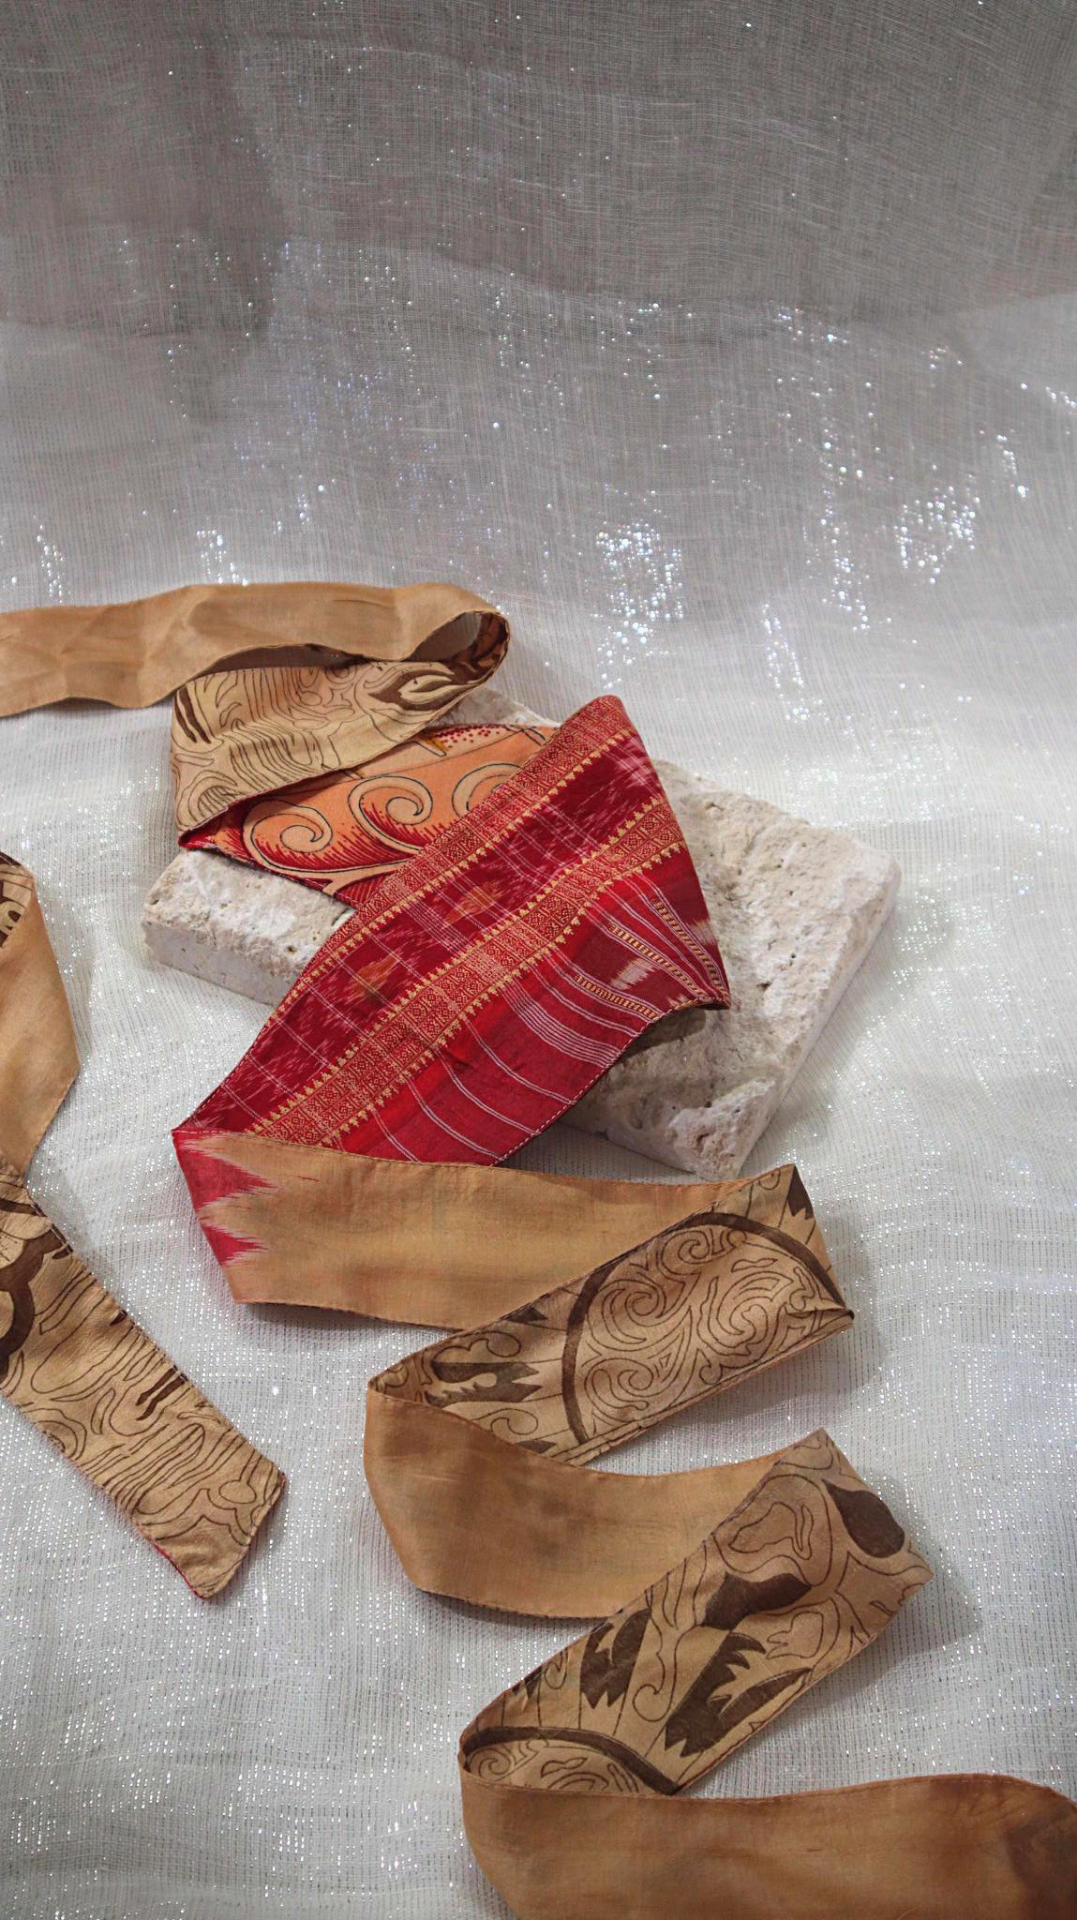 The Dreamer vintage sari (100%) silk Obi, to adorn your waist. One size.